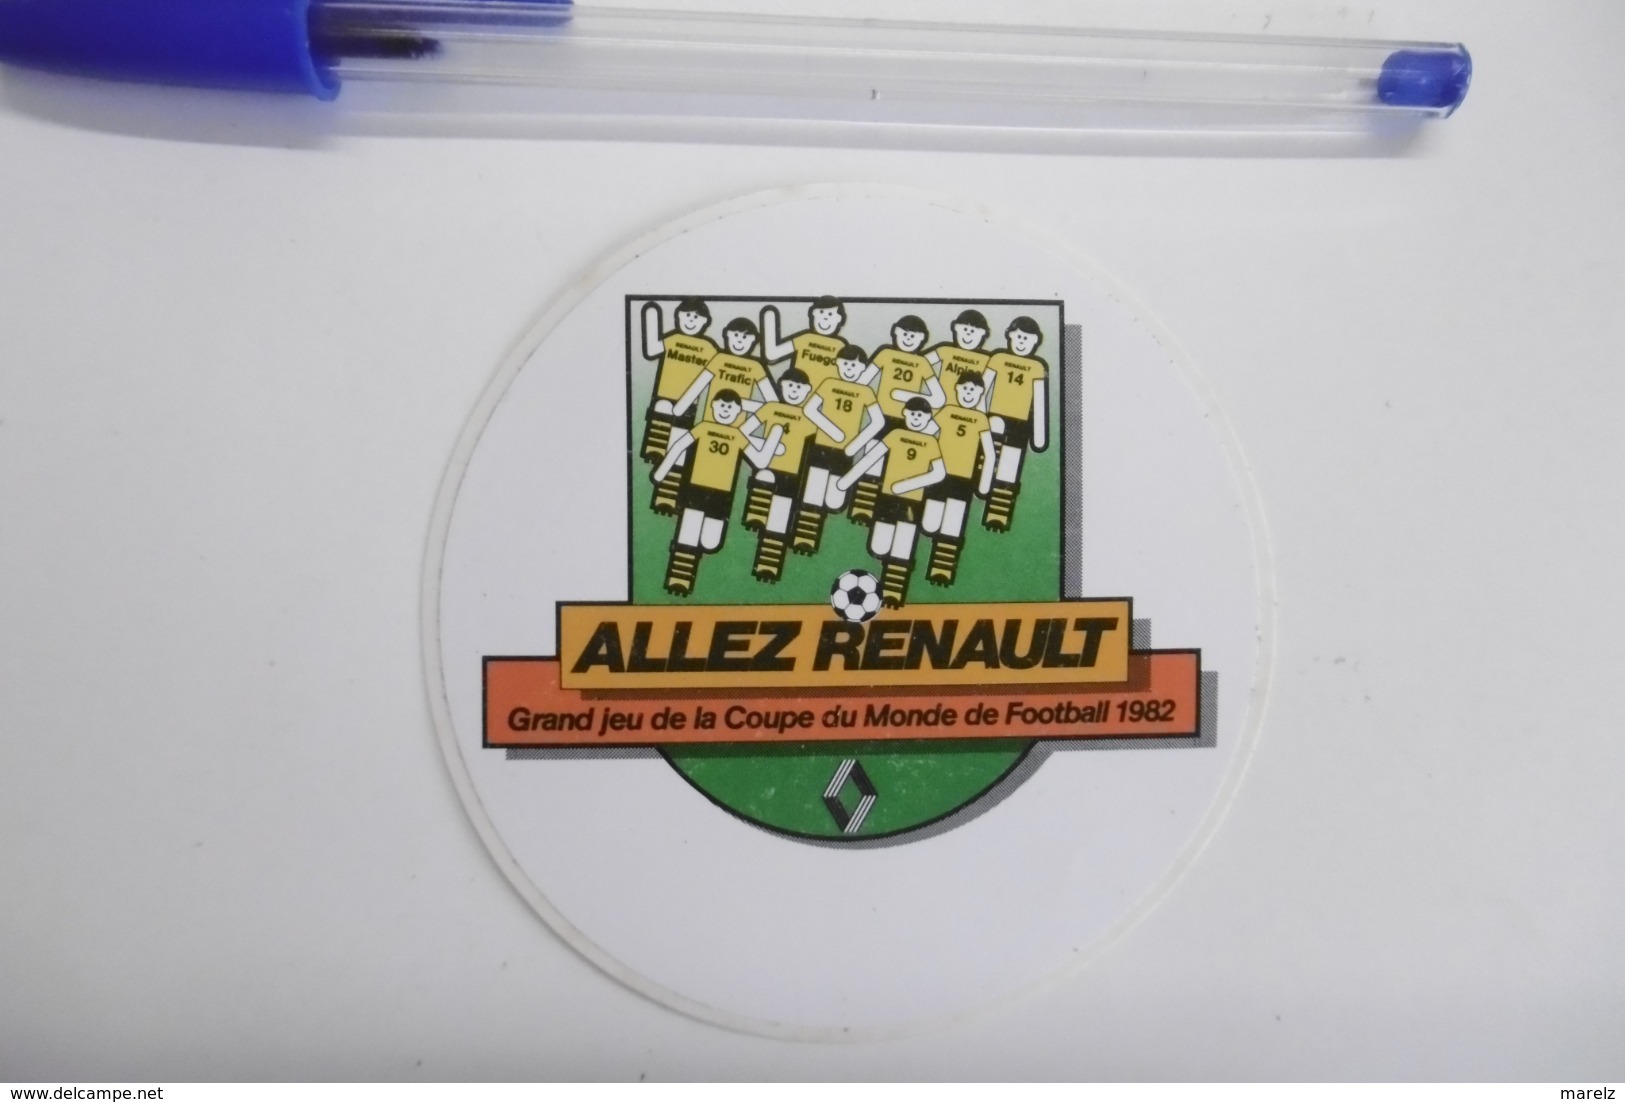 Autocollants Stickers Sport Football Grand Jeu Coupe Du Monde 1982 Avec RENAULT - Autocollants